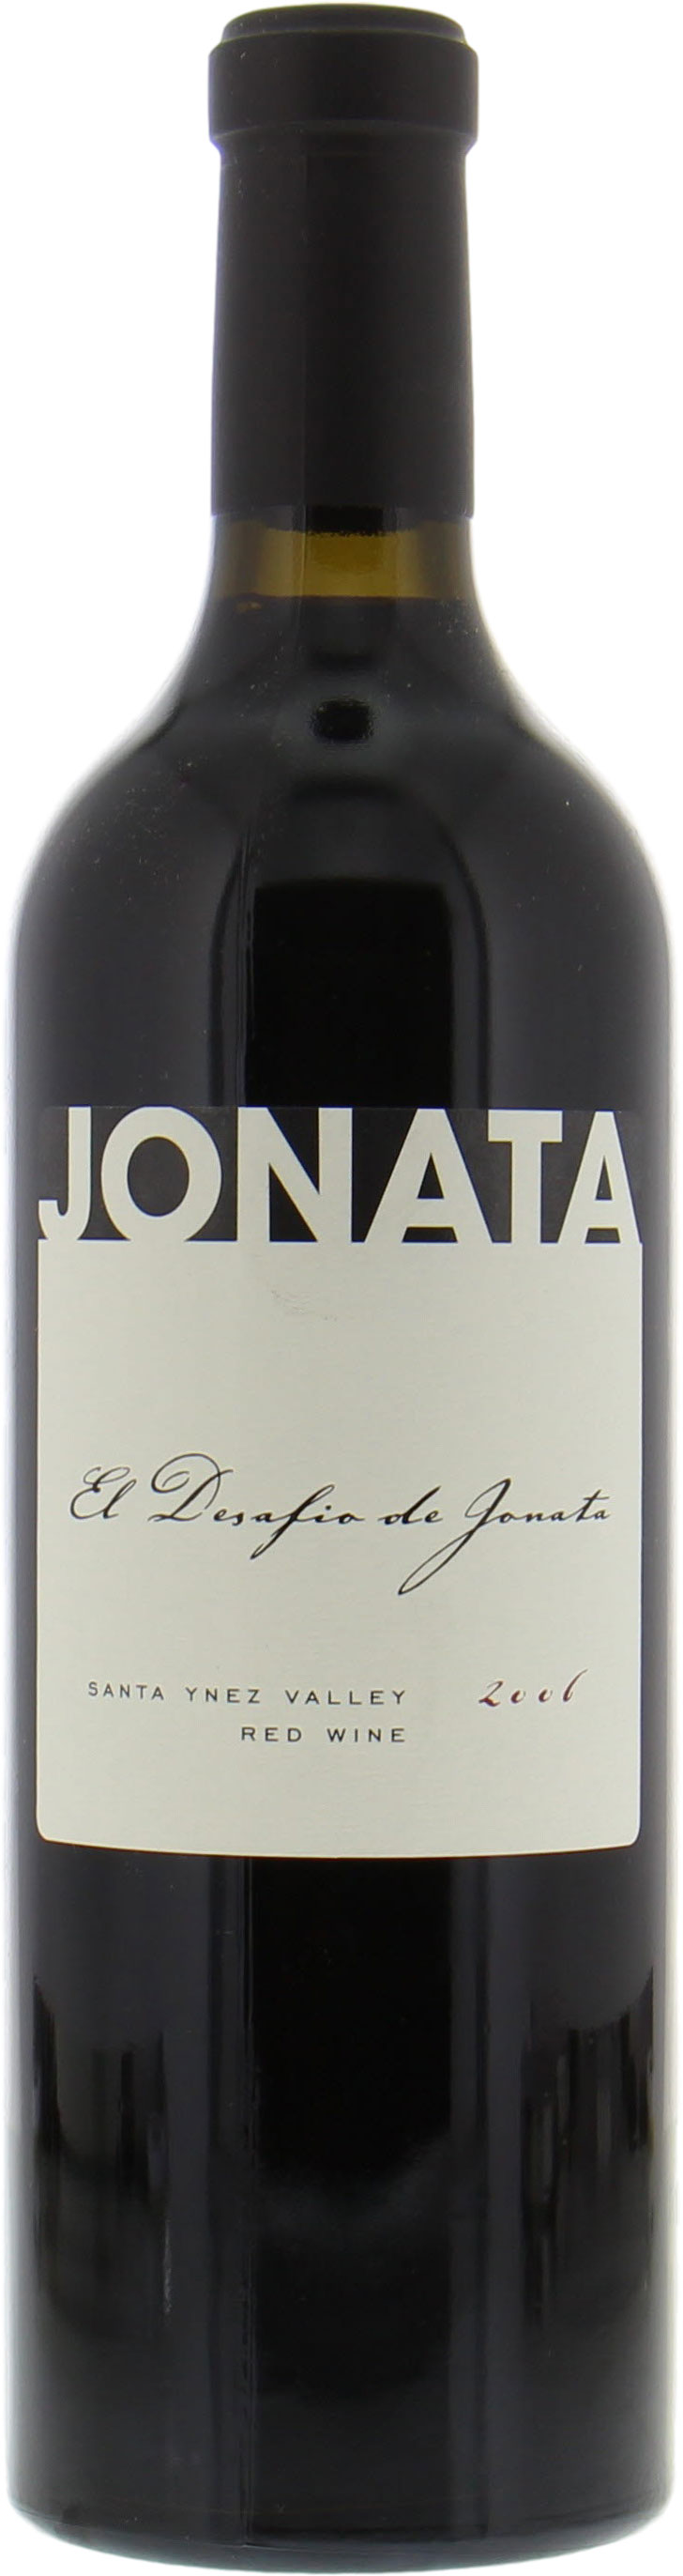 Jonata - El Desafio de Jonata 2006 Perfect